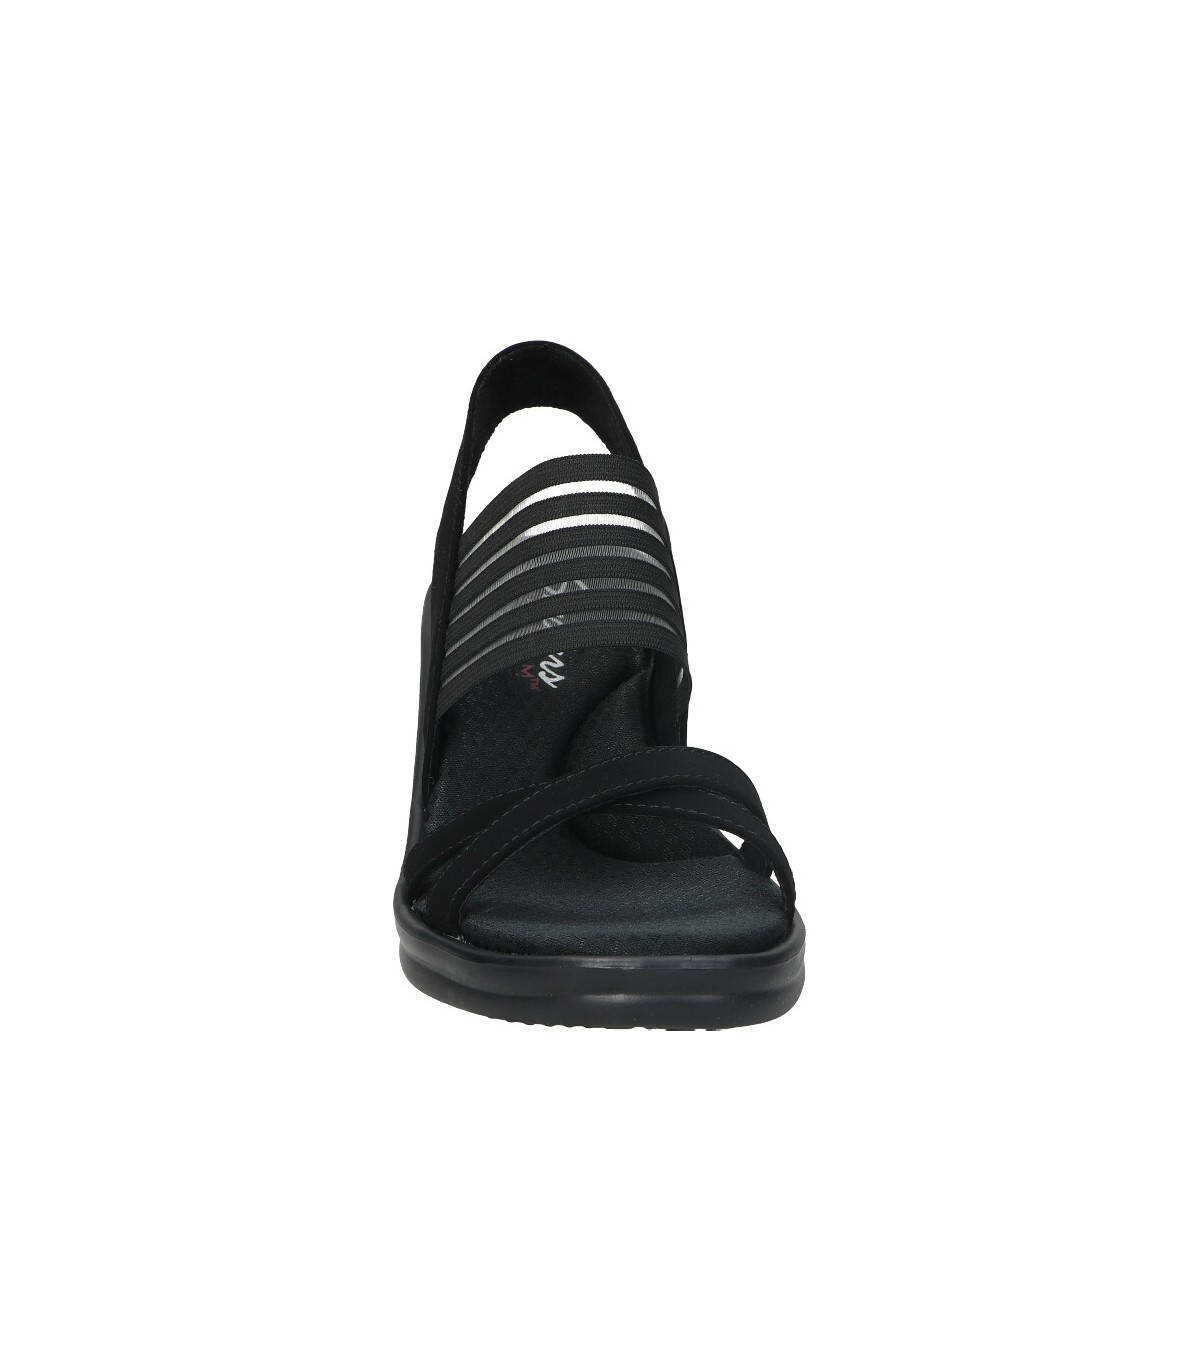 Sandalias en color negro para mujer Envío